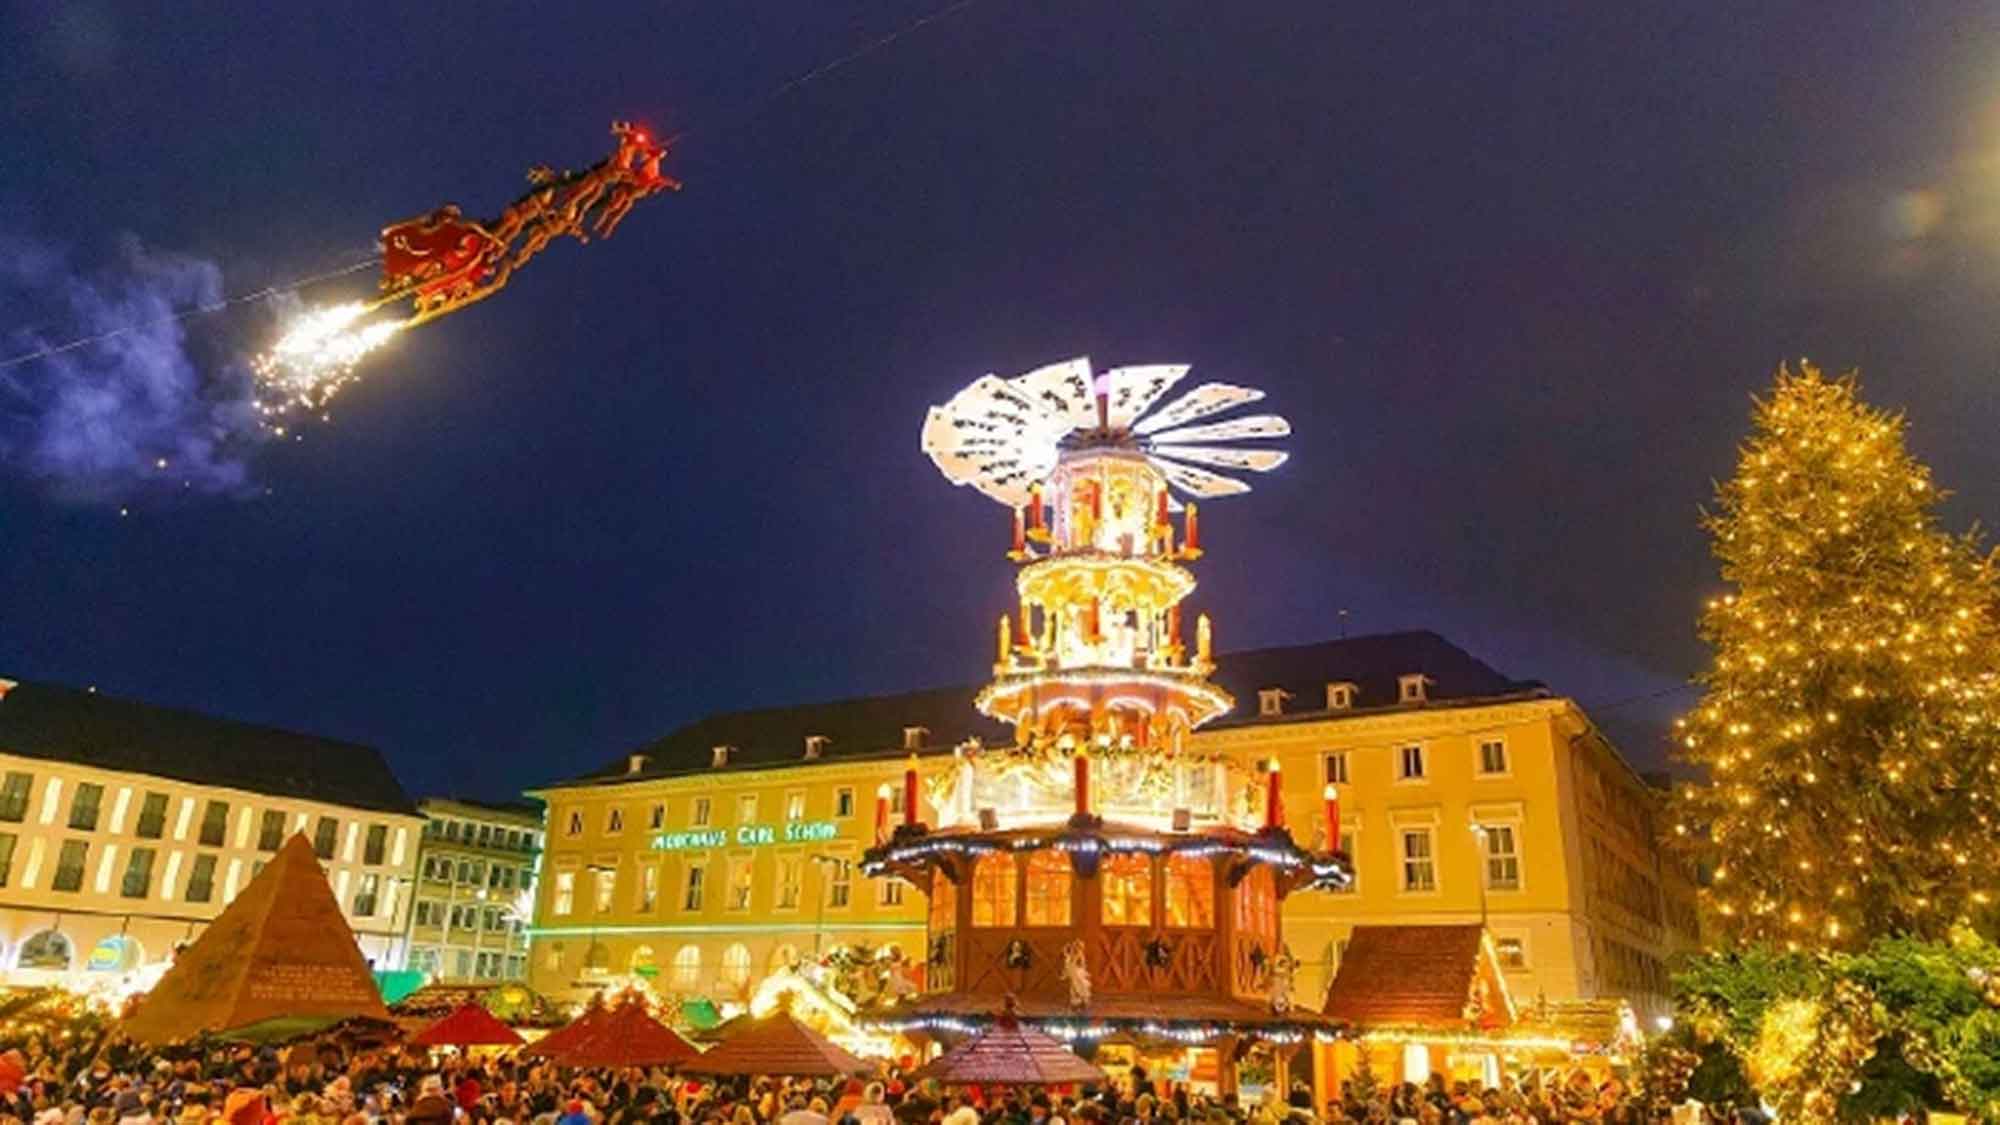 Weihnachtlicher Lichterzauber in Karlsruhe mit neuen Highlights